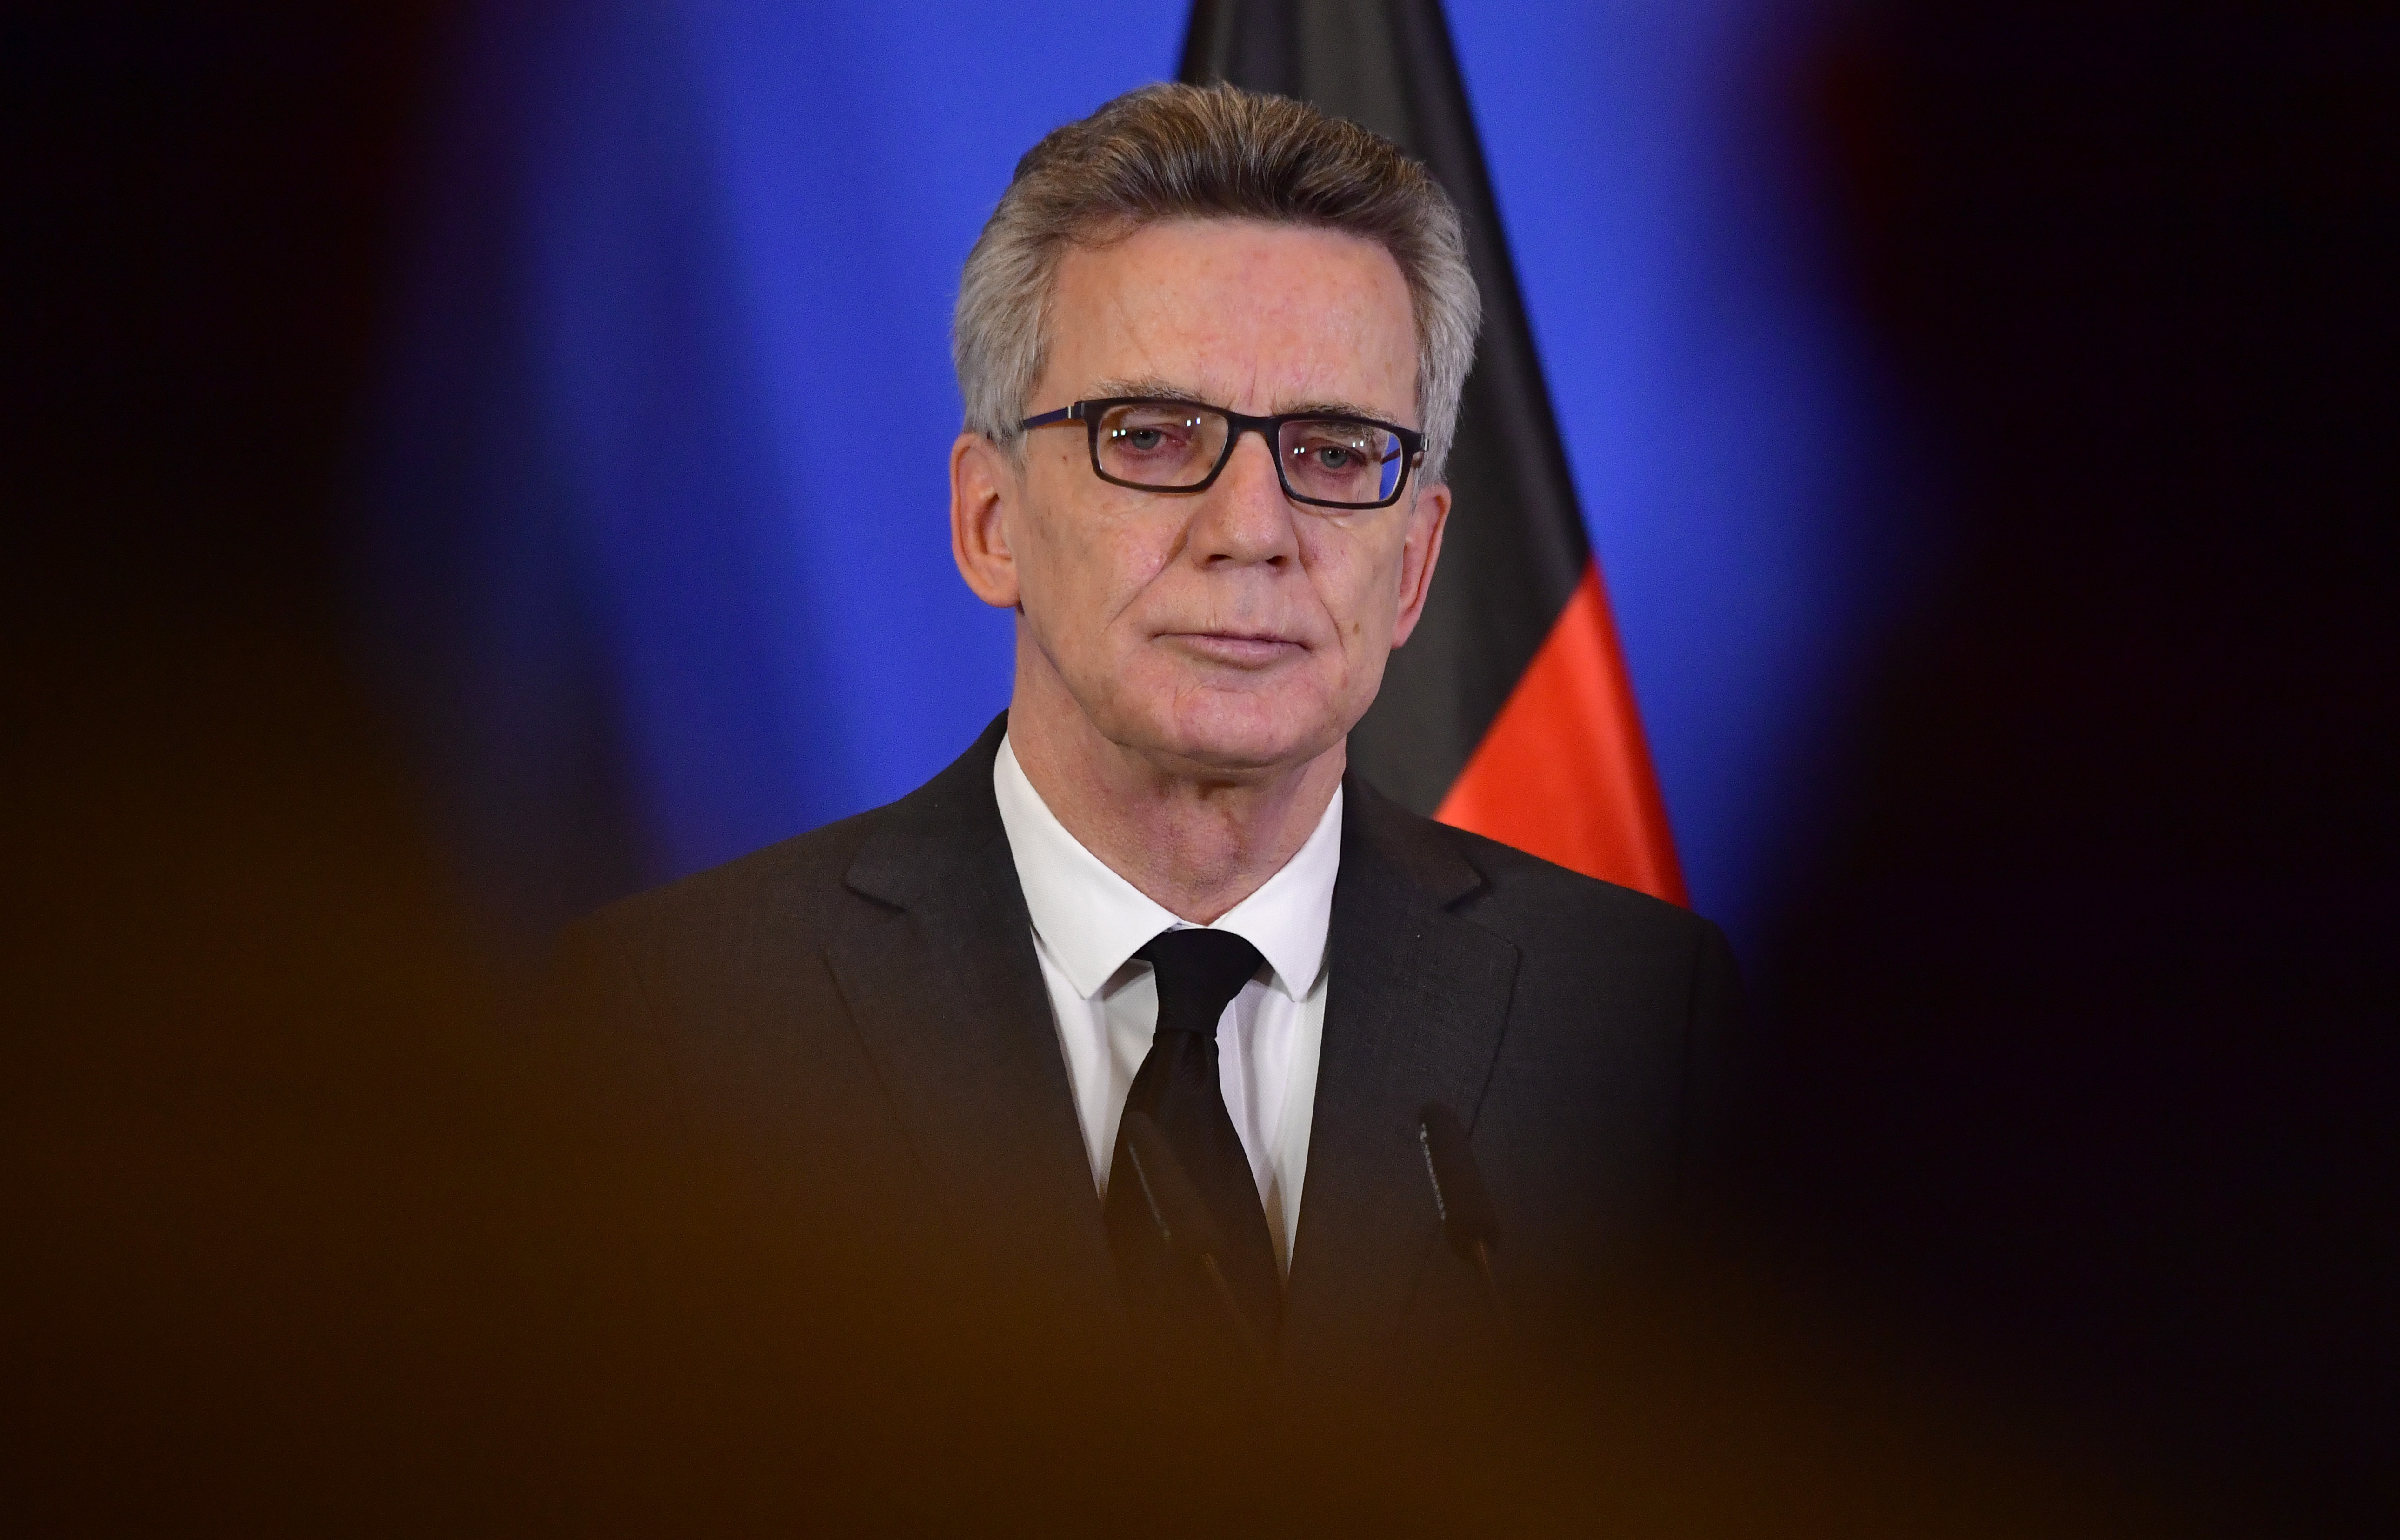 Titkosszolgálati központosítást javasol a német belügyminiszter a terrorellenes harcban